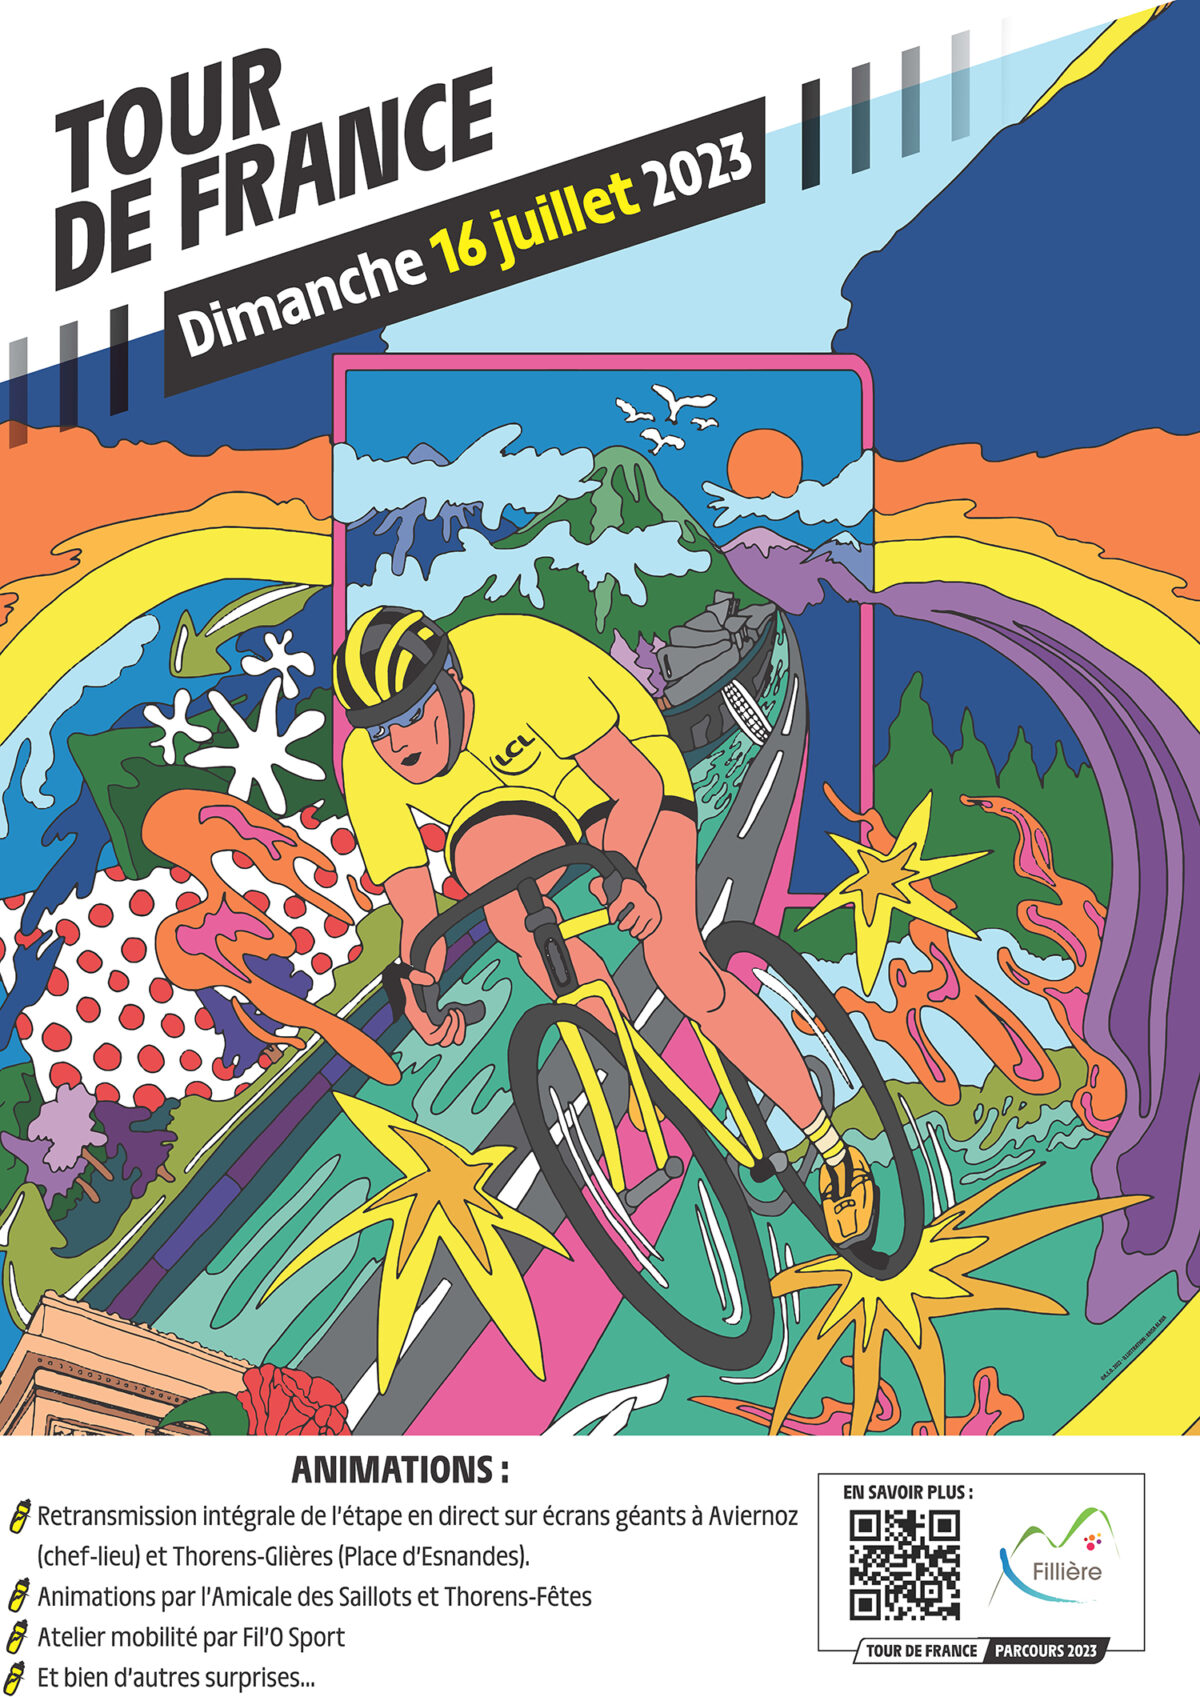 Le Tour de France 2023 à Fillière : toutes les informations à savoir